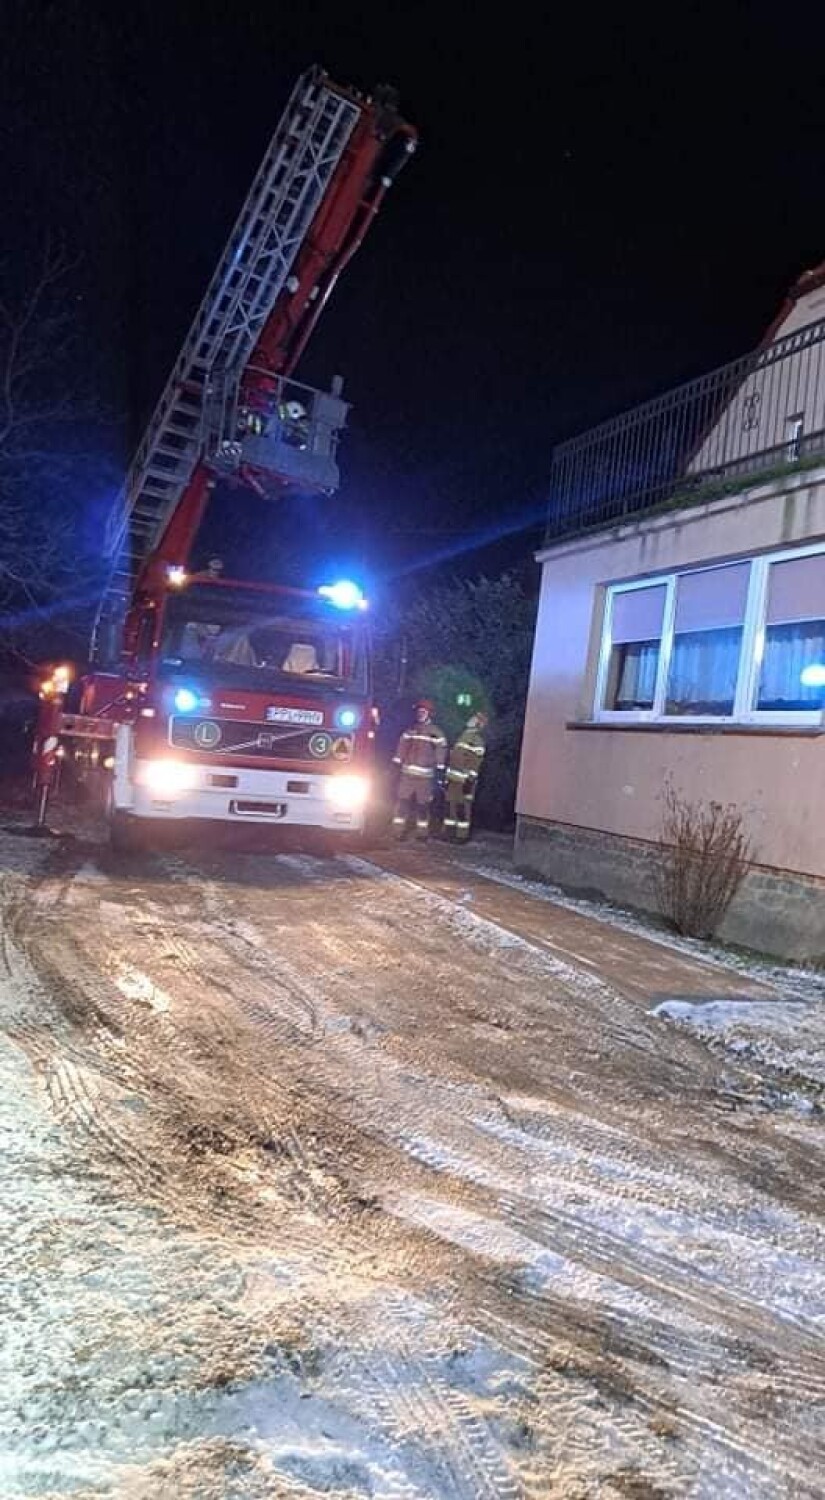 6 stycznia doszło do pożaru sadzy w jednym z budynków przy ulicy Krotoszyńskiej w Dobrzycy